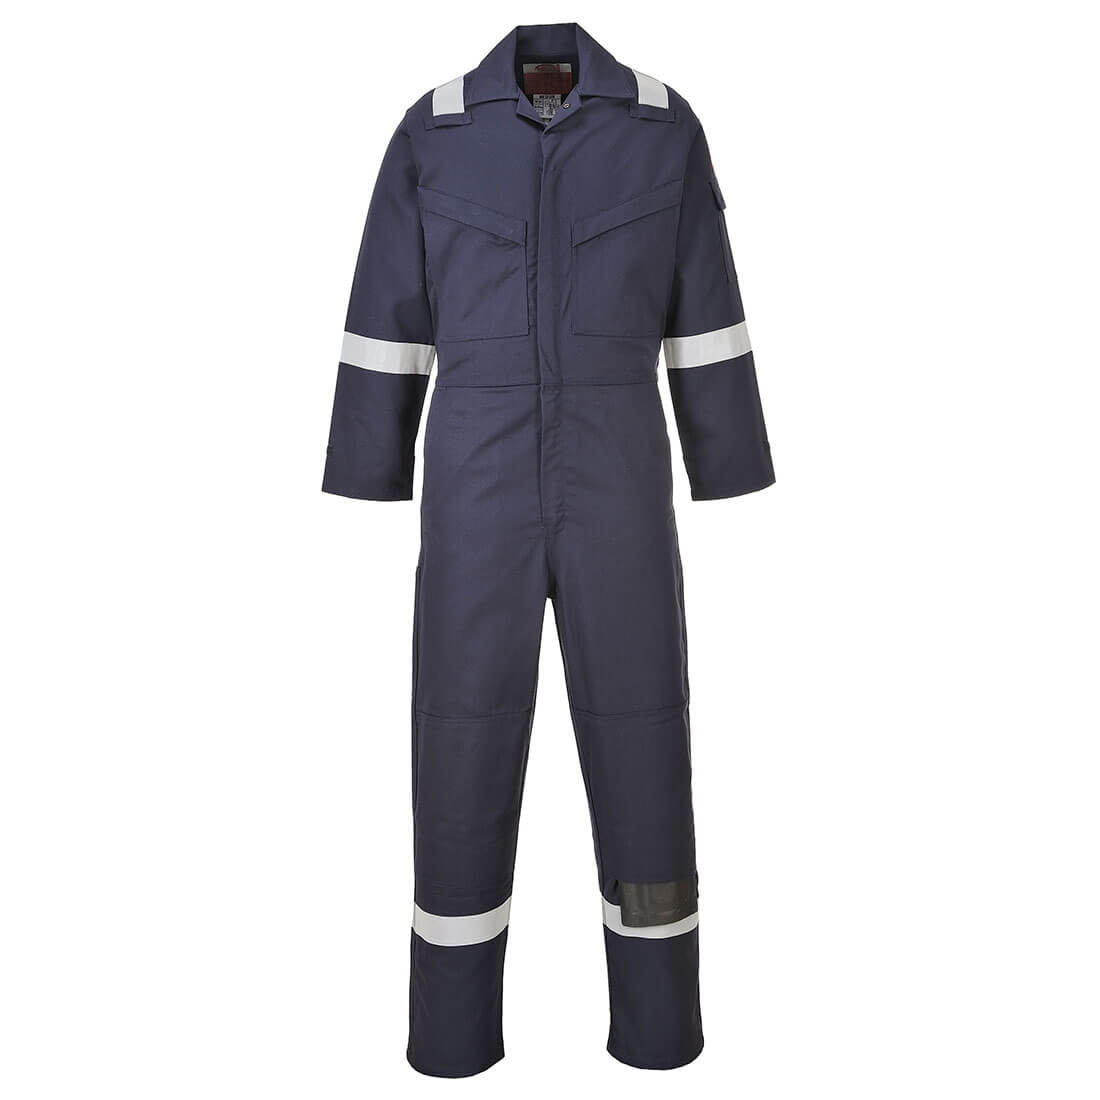 Aberdeen FR Coverall - Safetywear